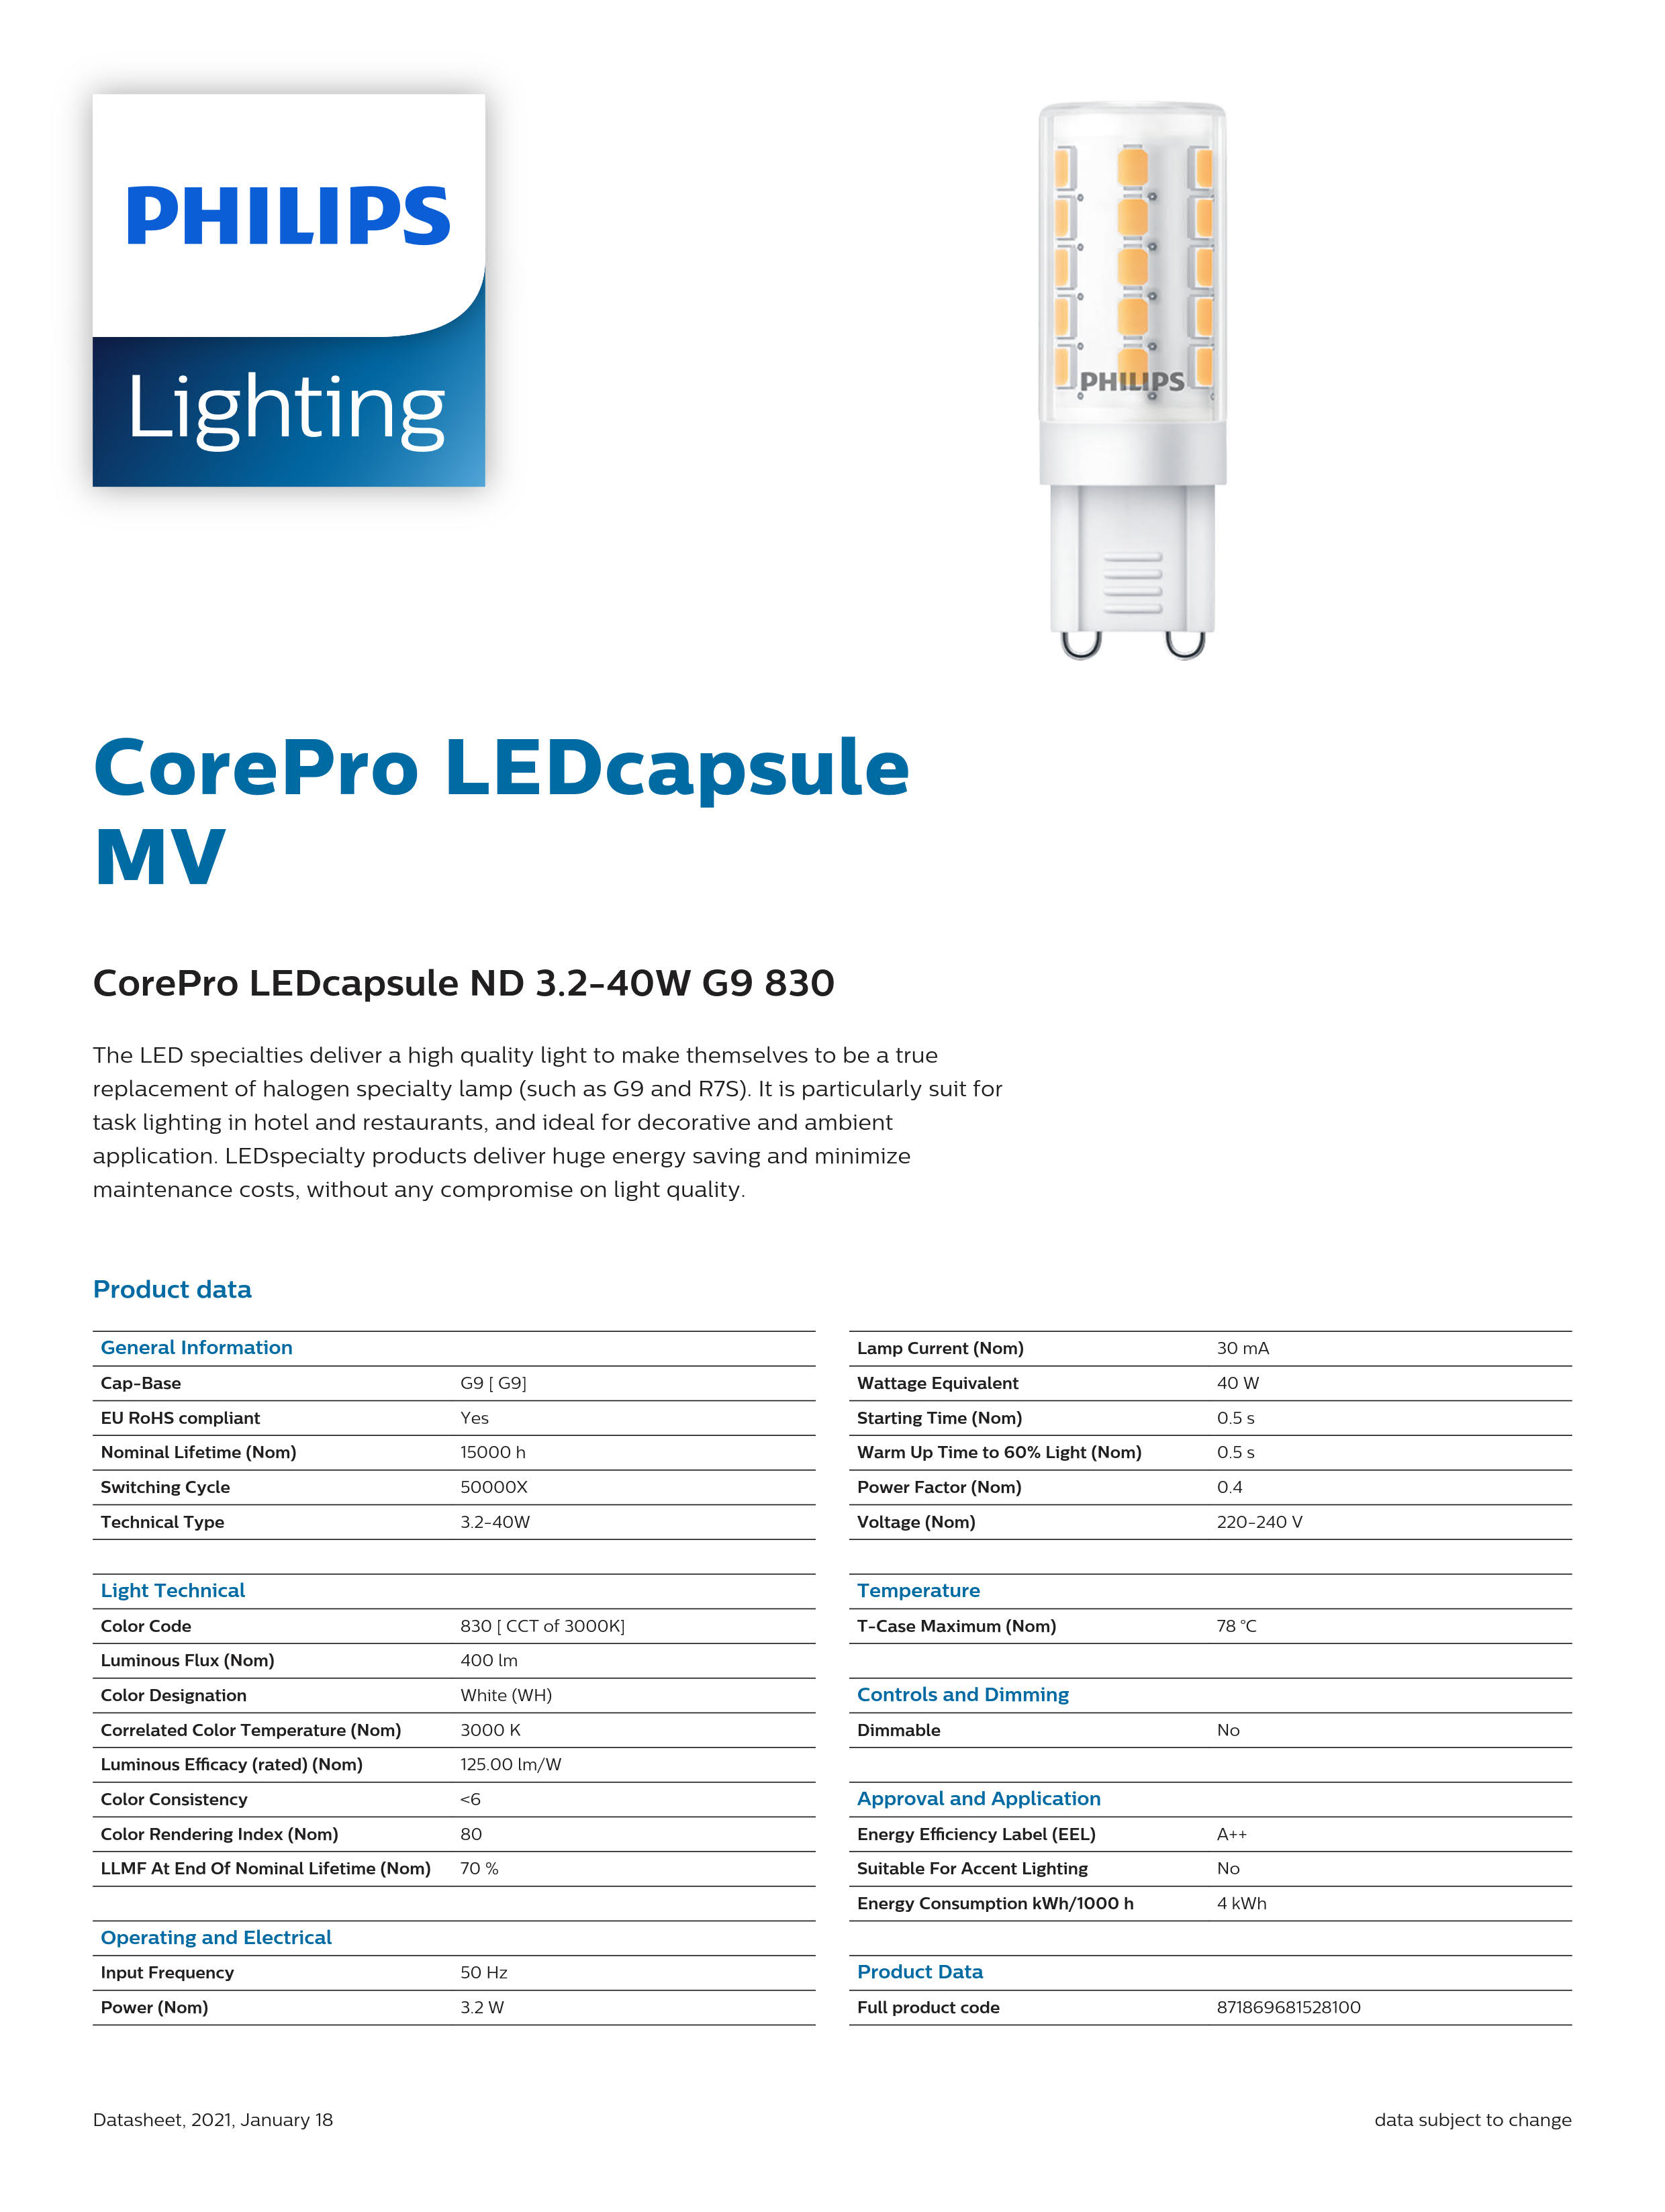 PHILIPS CorePro LEDcapsule ND 3.2-40W G9 830 929001903002